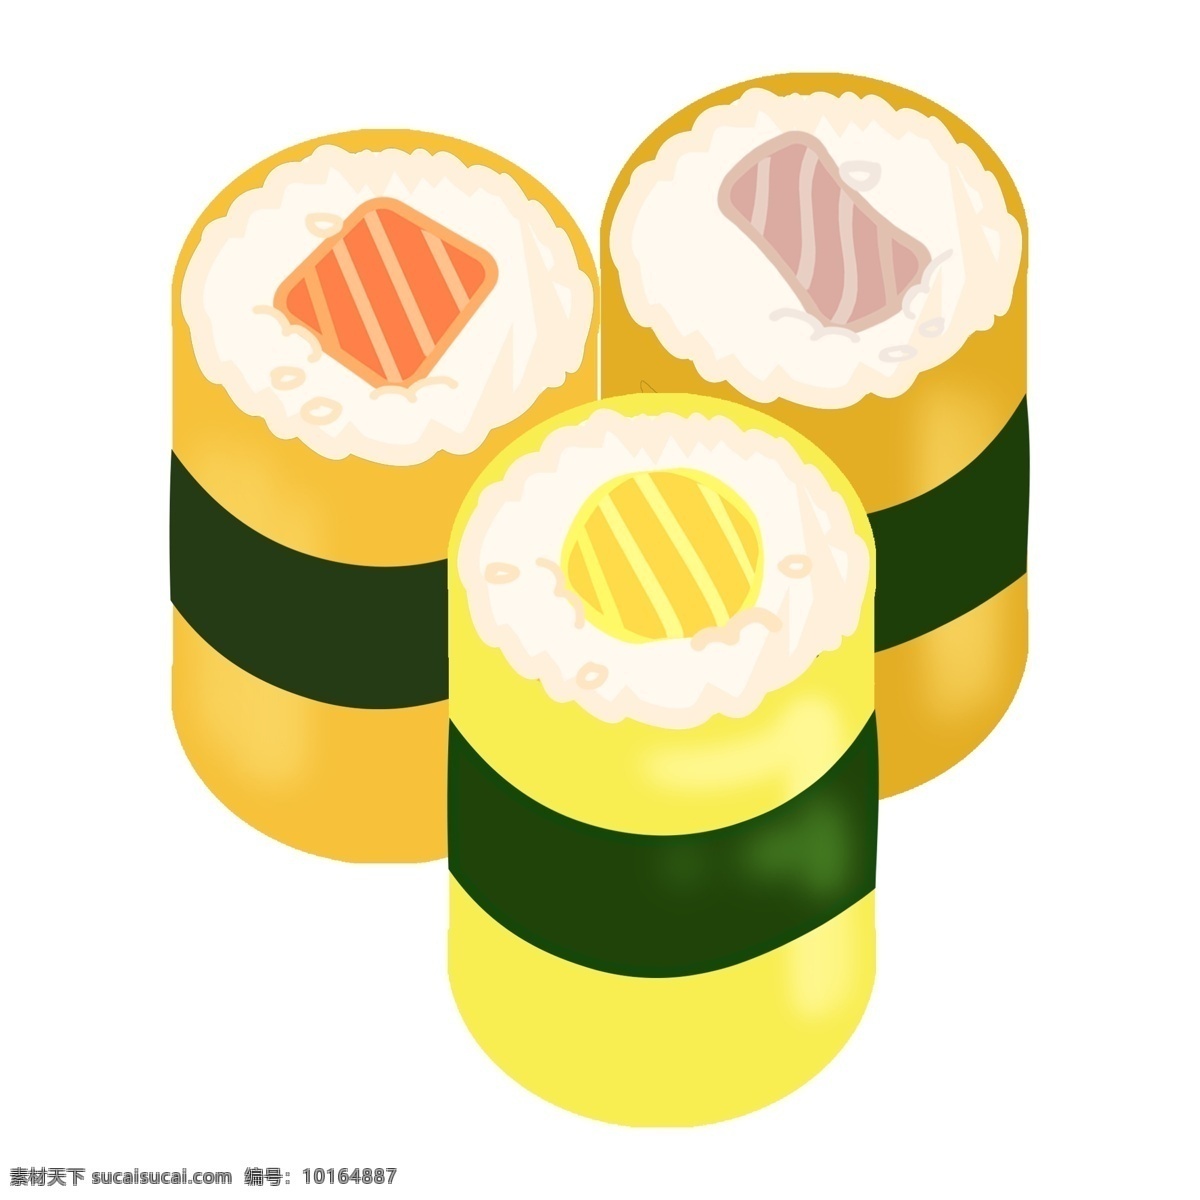 日本 圆形 寿司 插画 圆形寿司 日本寿司 特色美食 食物 三个寿司 美味的寿司 海鲜寿司 卡通寿司插画